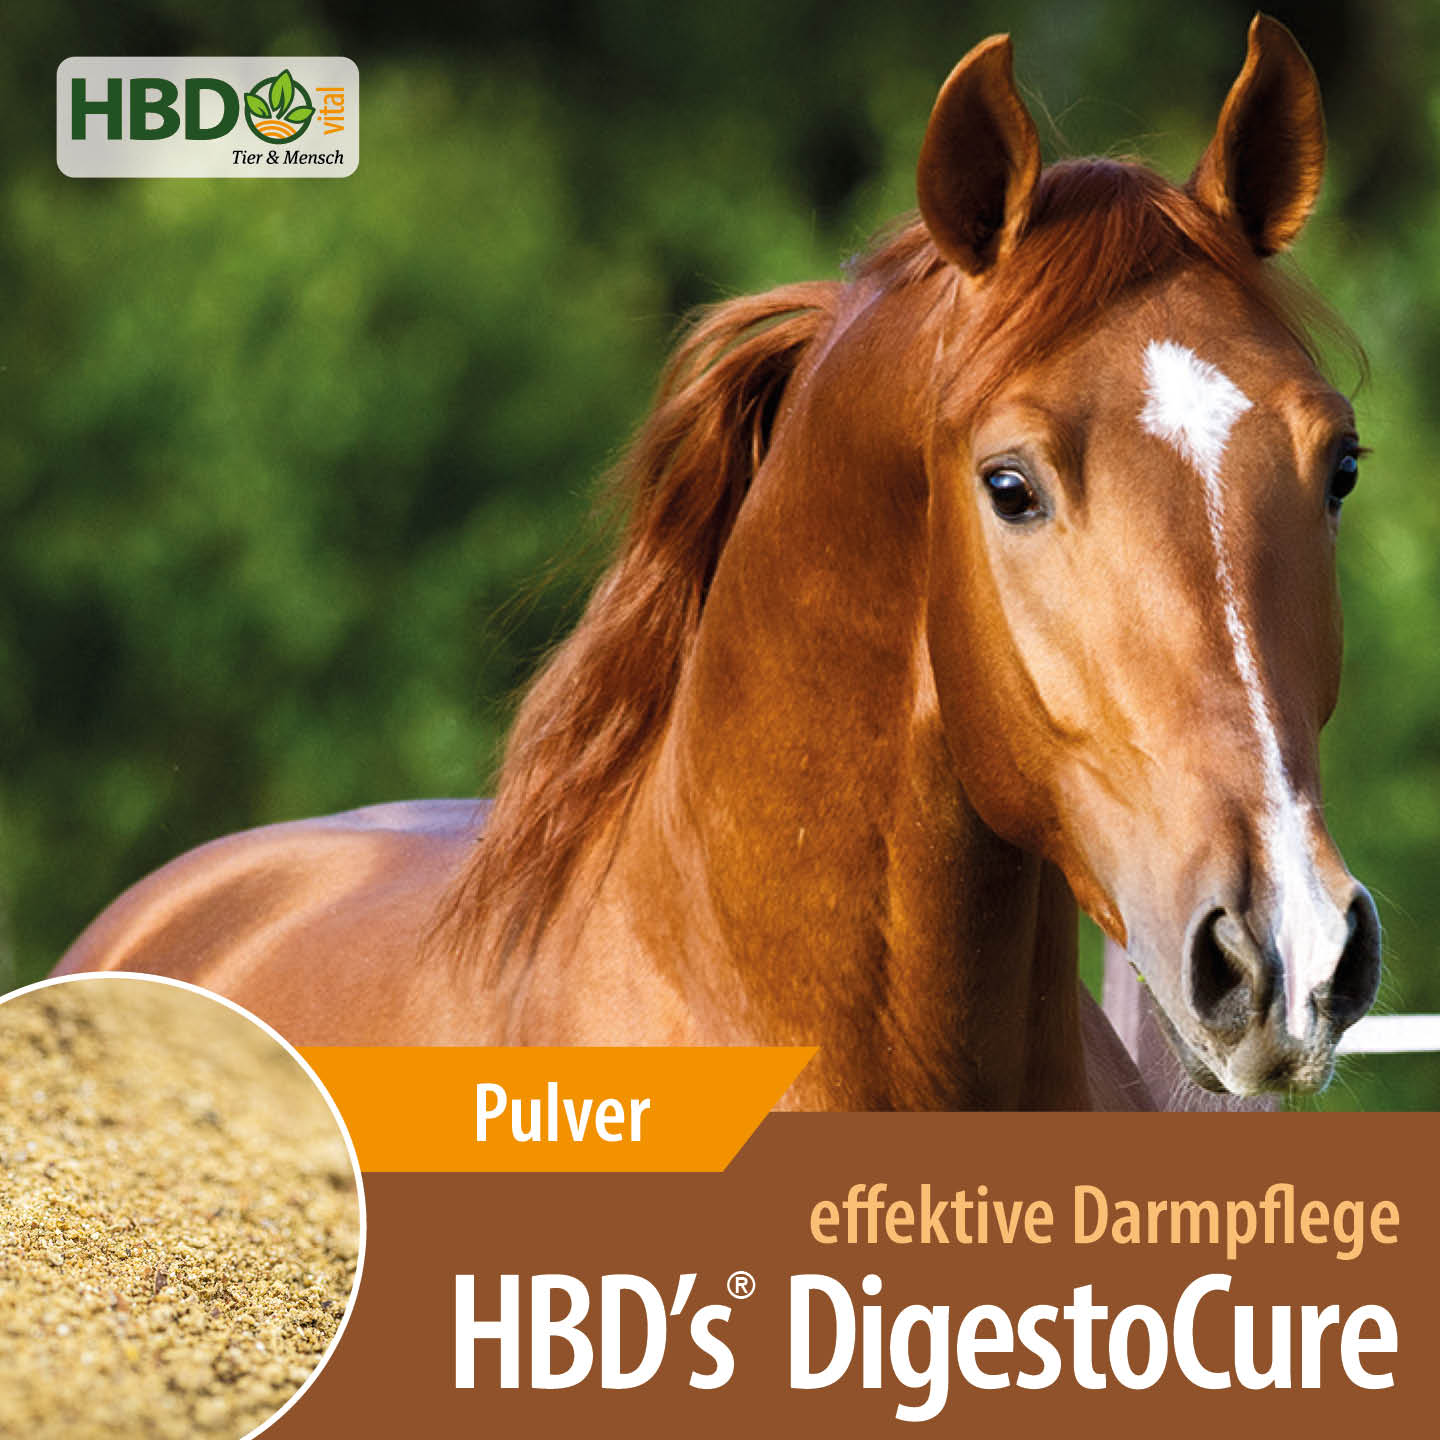 Shopbild für HBD's DigestoCure - Das Bild zeigt den Produktnamen wie den Hinweis, dass es sich um ein Pulver handelt. Der Satz 'Effektive Darmpflege' ist zu sehen. Zusätzlich ist ein hellbraunes Pferd abgebildet.